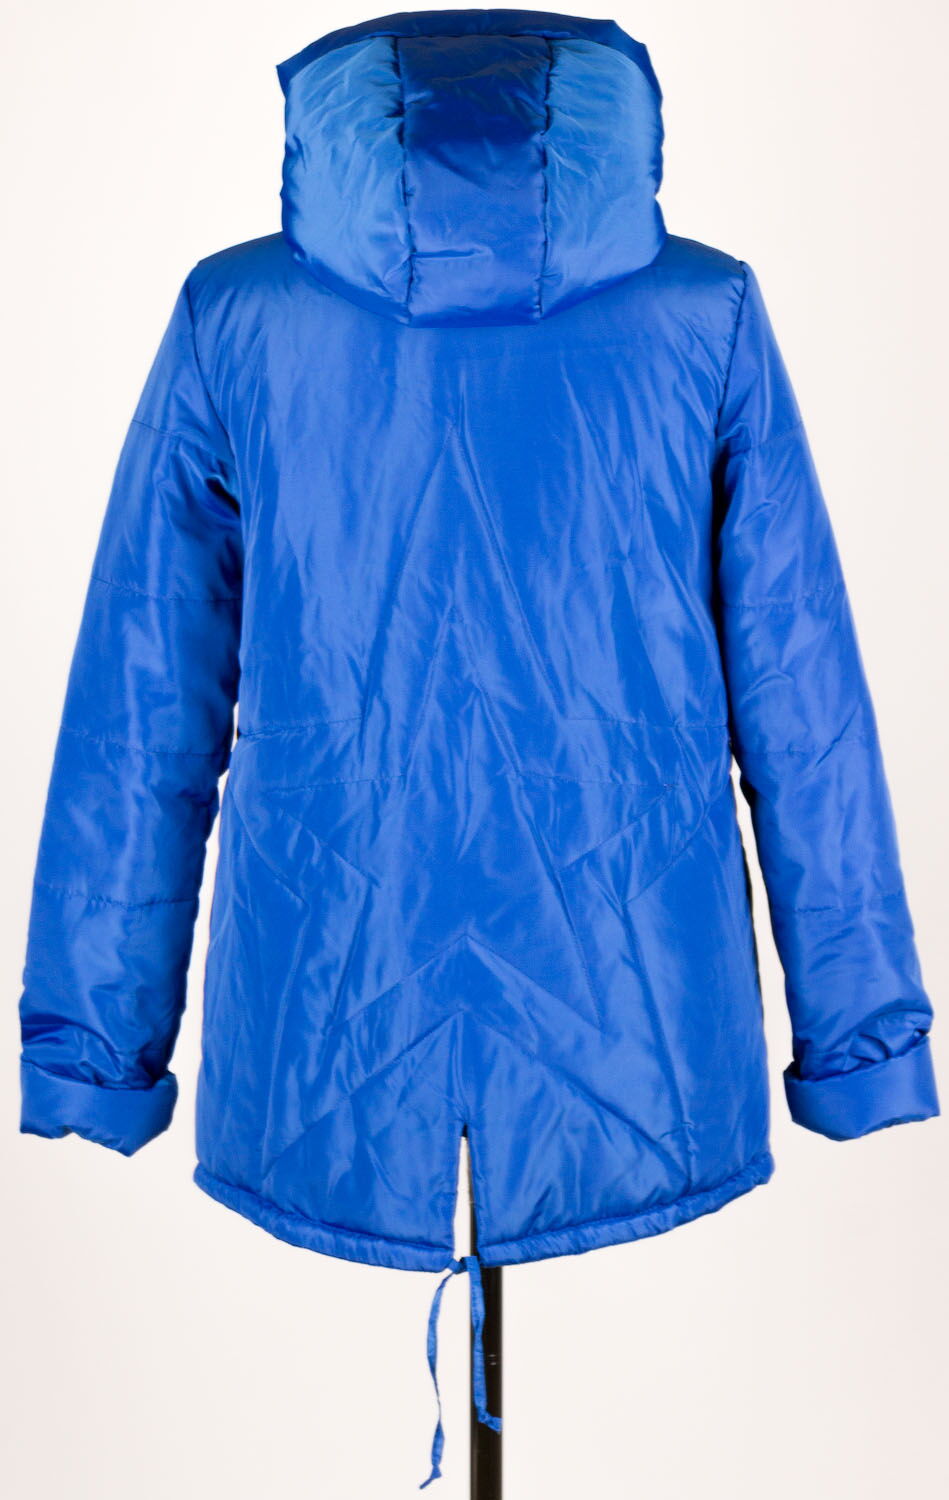 Куртка для девочки ОДЯГАЙКО синяя 25002 - купить